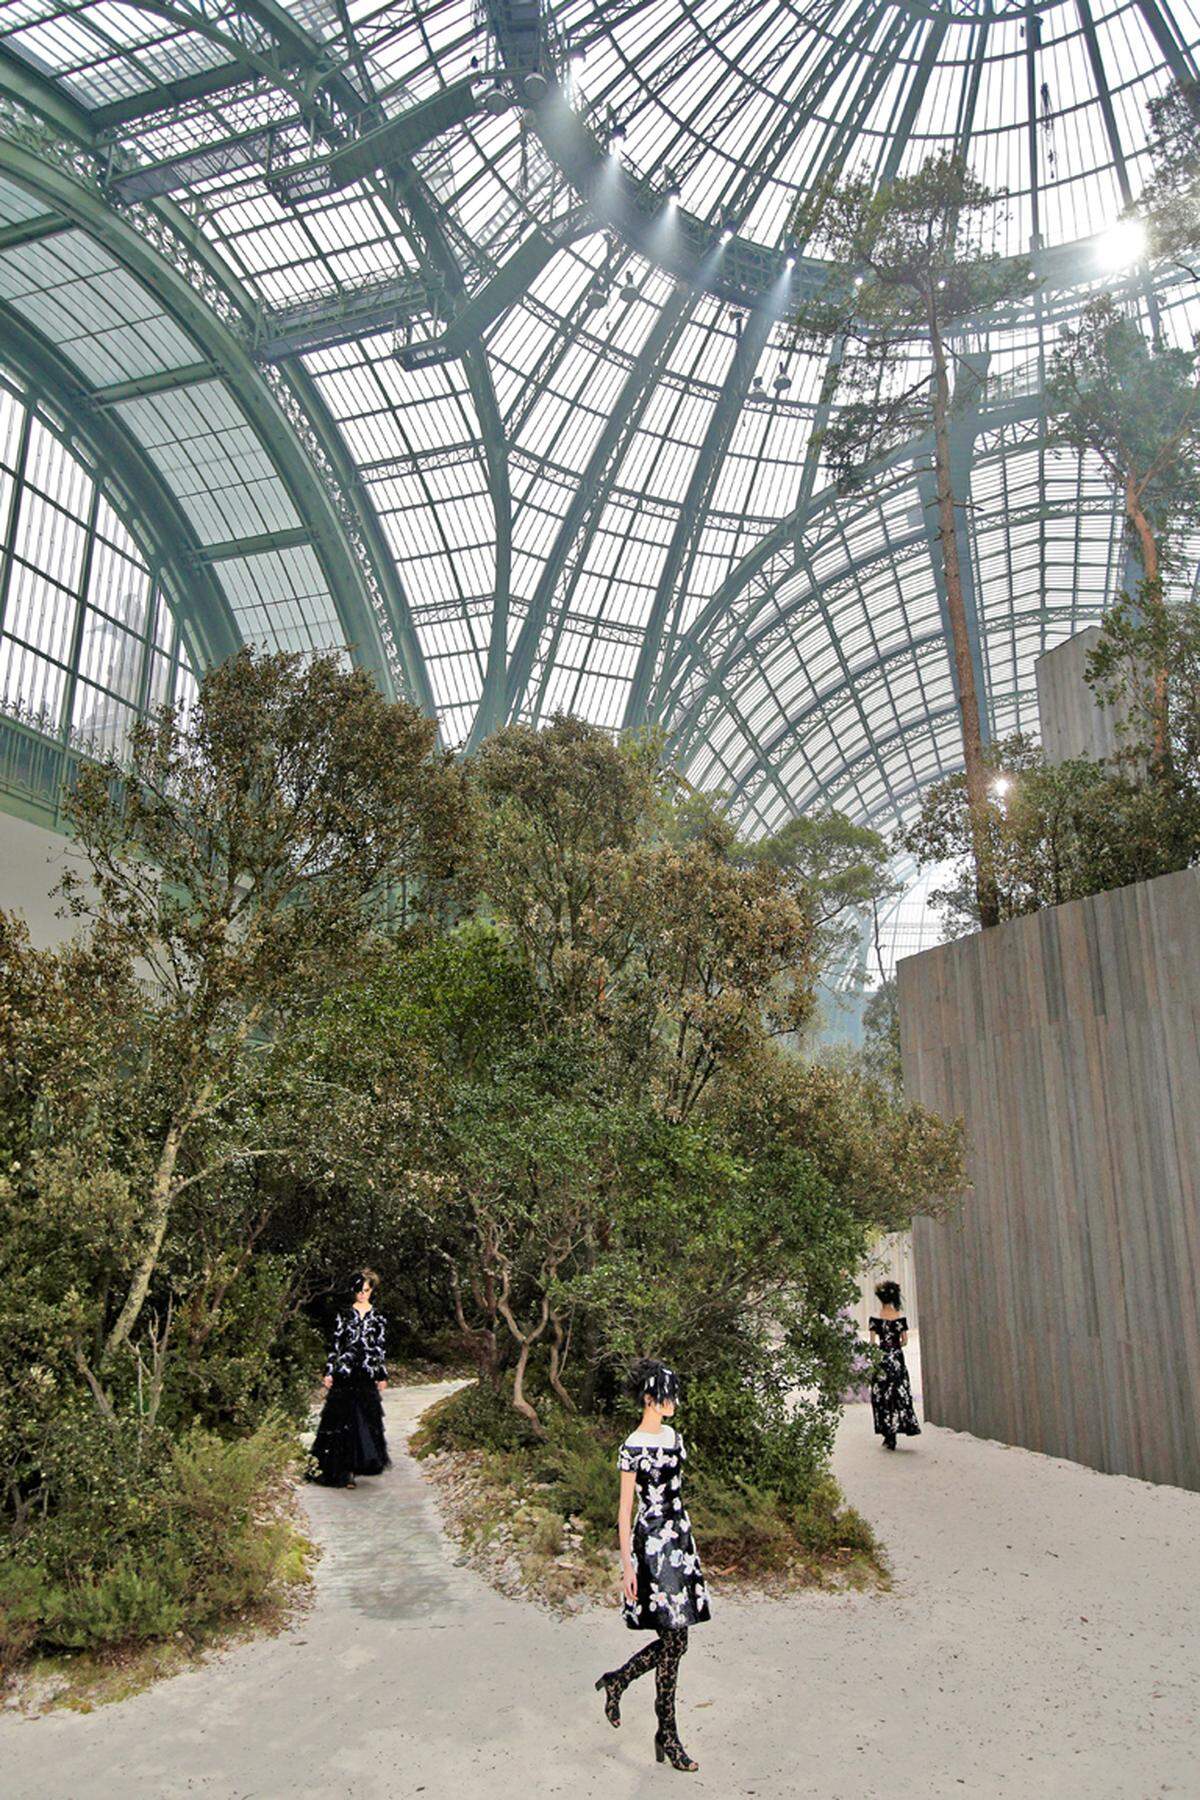 Das Maison Chanel lässt es sich nicht nehmen, Saison um Saison den wunderbaren, für die Pariser Weltausstellung im Jahr 1900 errichteten Glaspalast des „Grand Palais“ zu bespielen. Diesmal sah Karl Lagerfeld den Wald vor lauter Bäumen nicht und ließ üppige Gewächse in dieses Show-Setting verpflanzen.